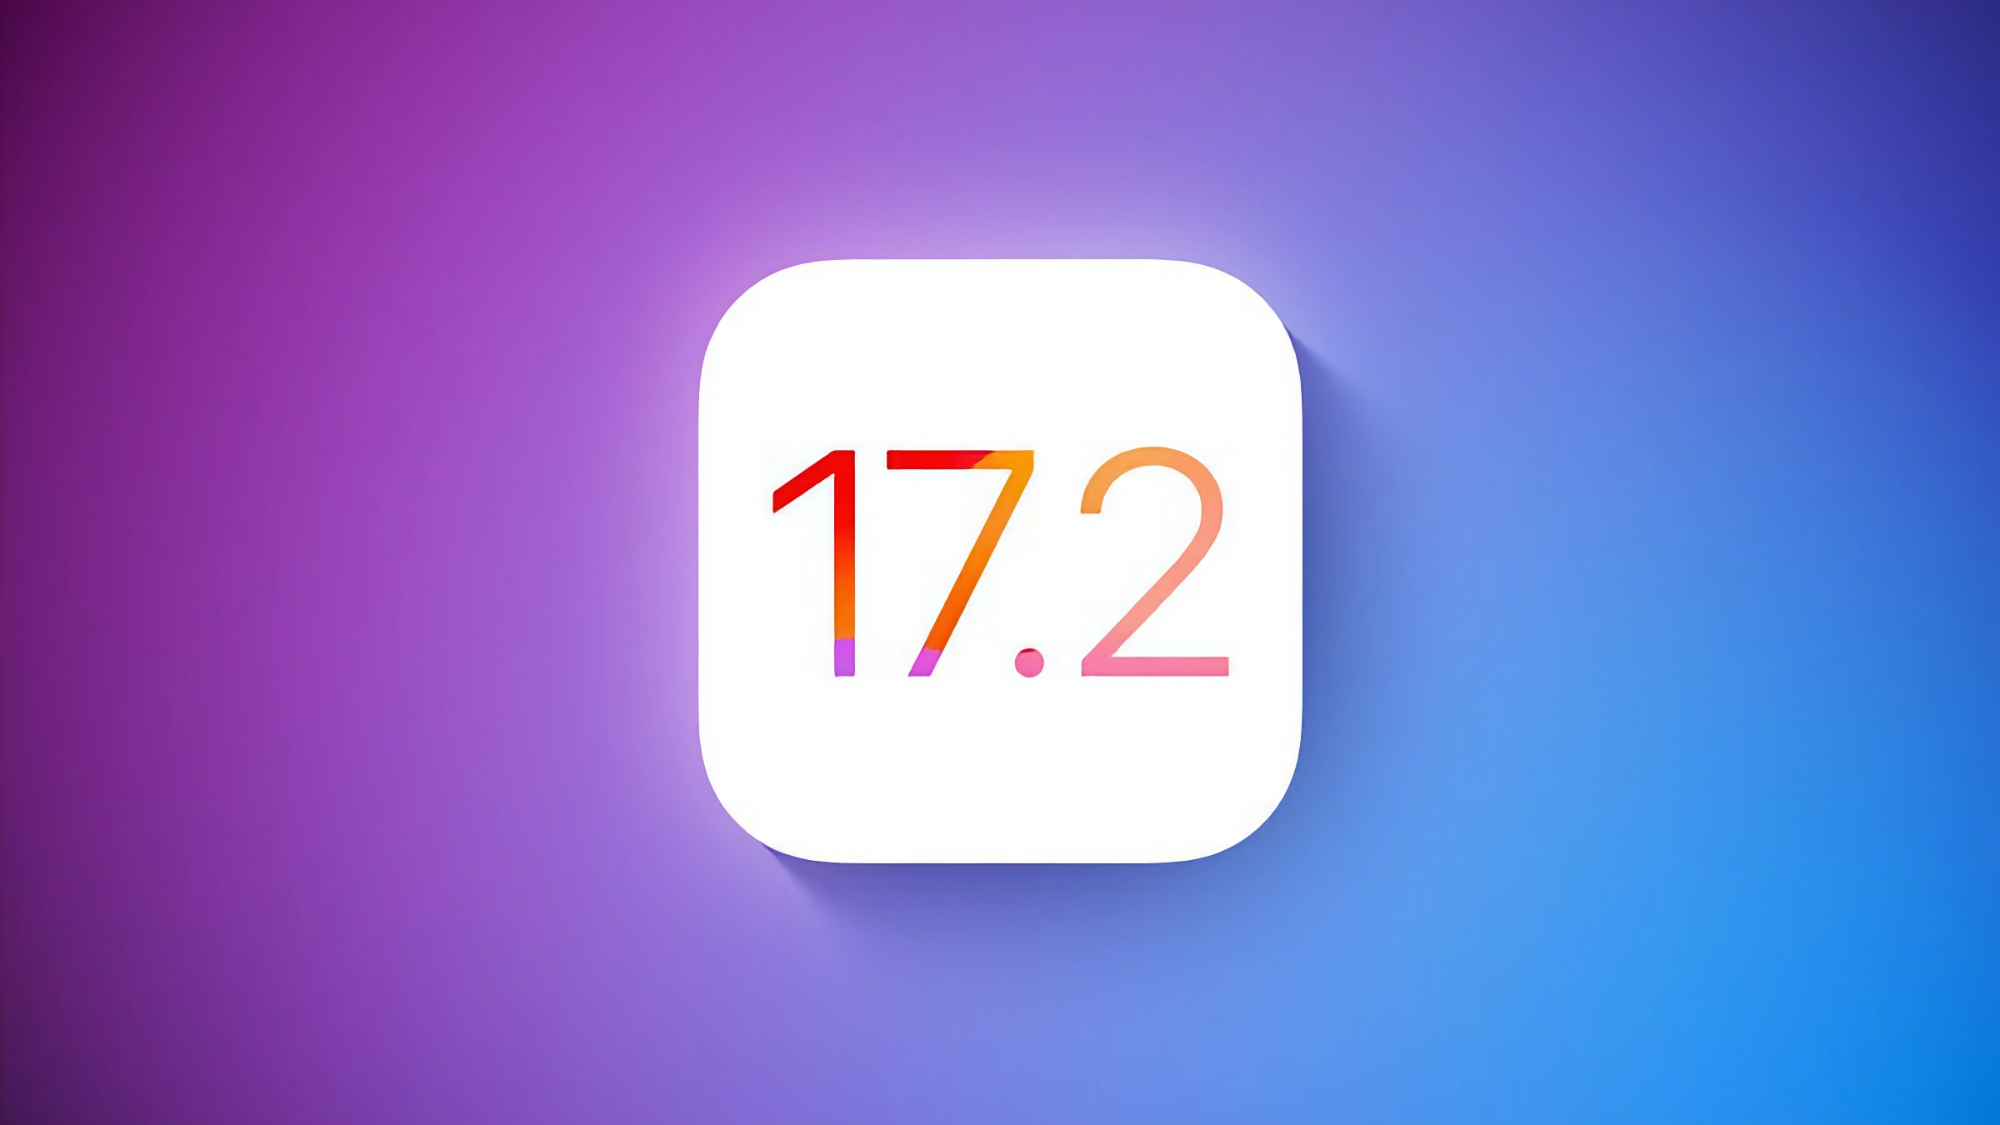 Apple udostępniło przedpremierową wersję systemu iOS 17.2